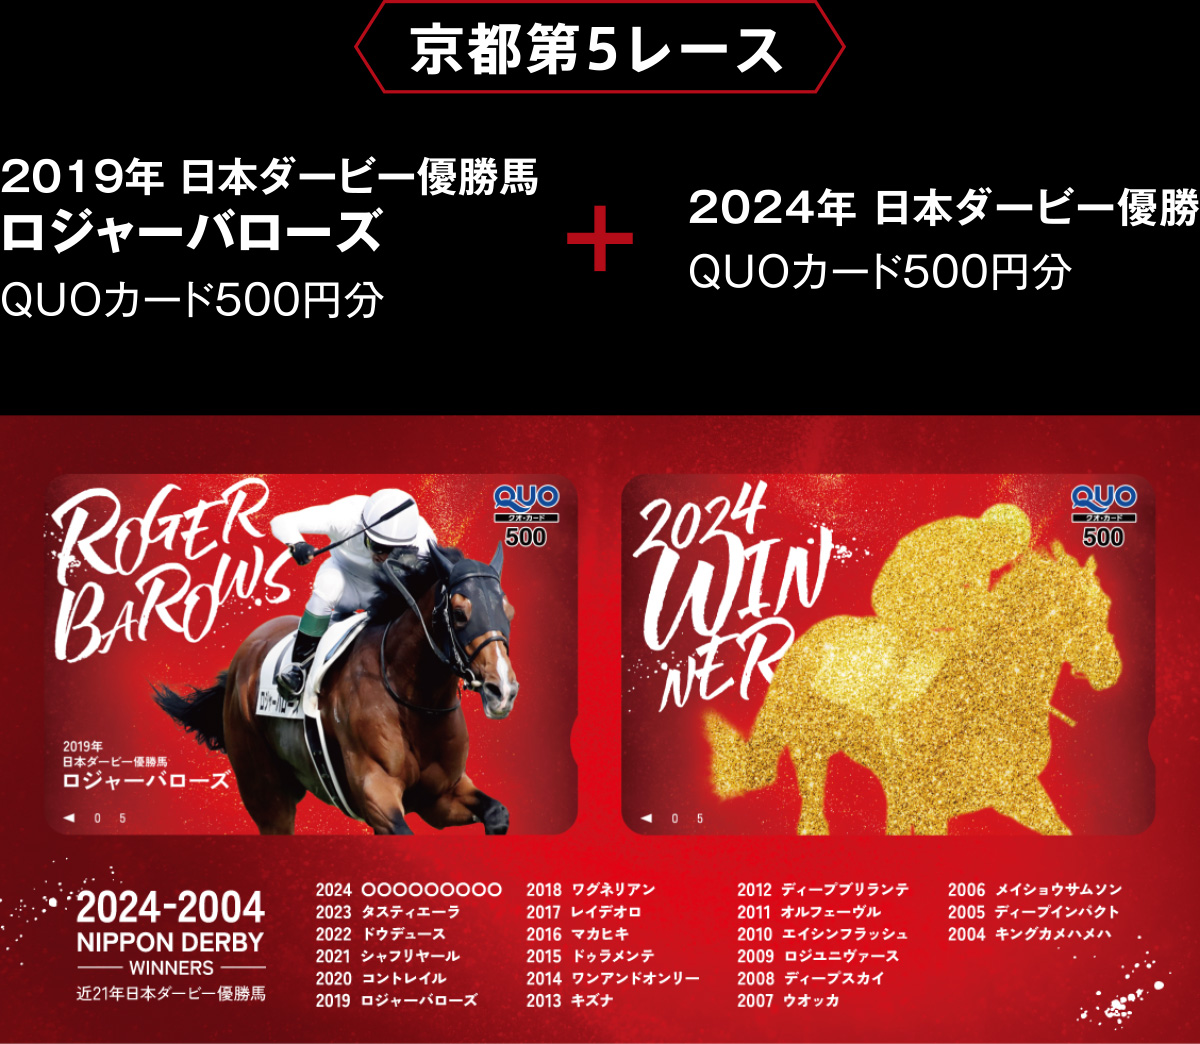 A-クオカード・日本ダービー第80回記念メモリーカード (キズナ・ ワカタカ・ダービー馬6頭 計3枚)